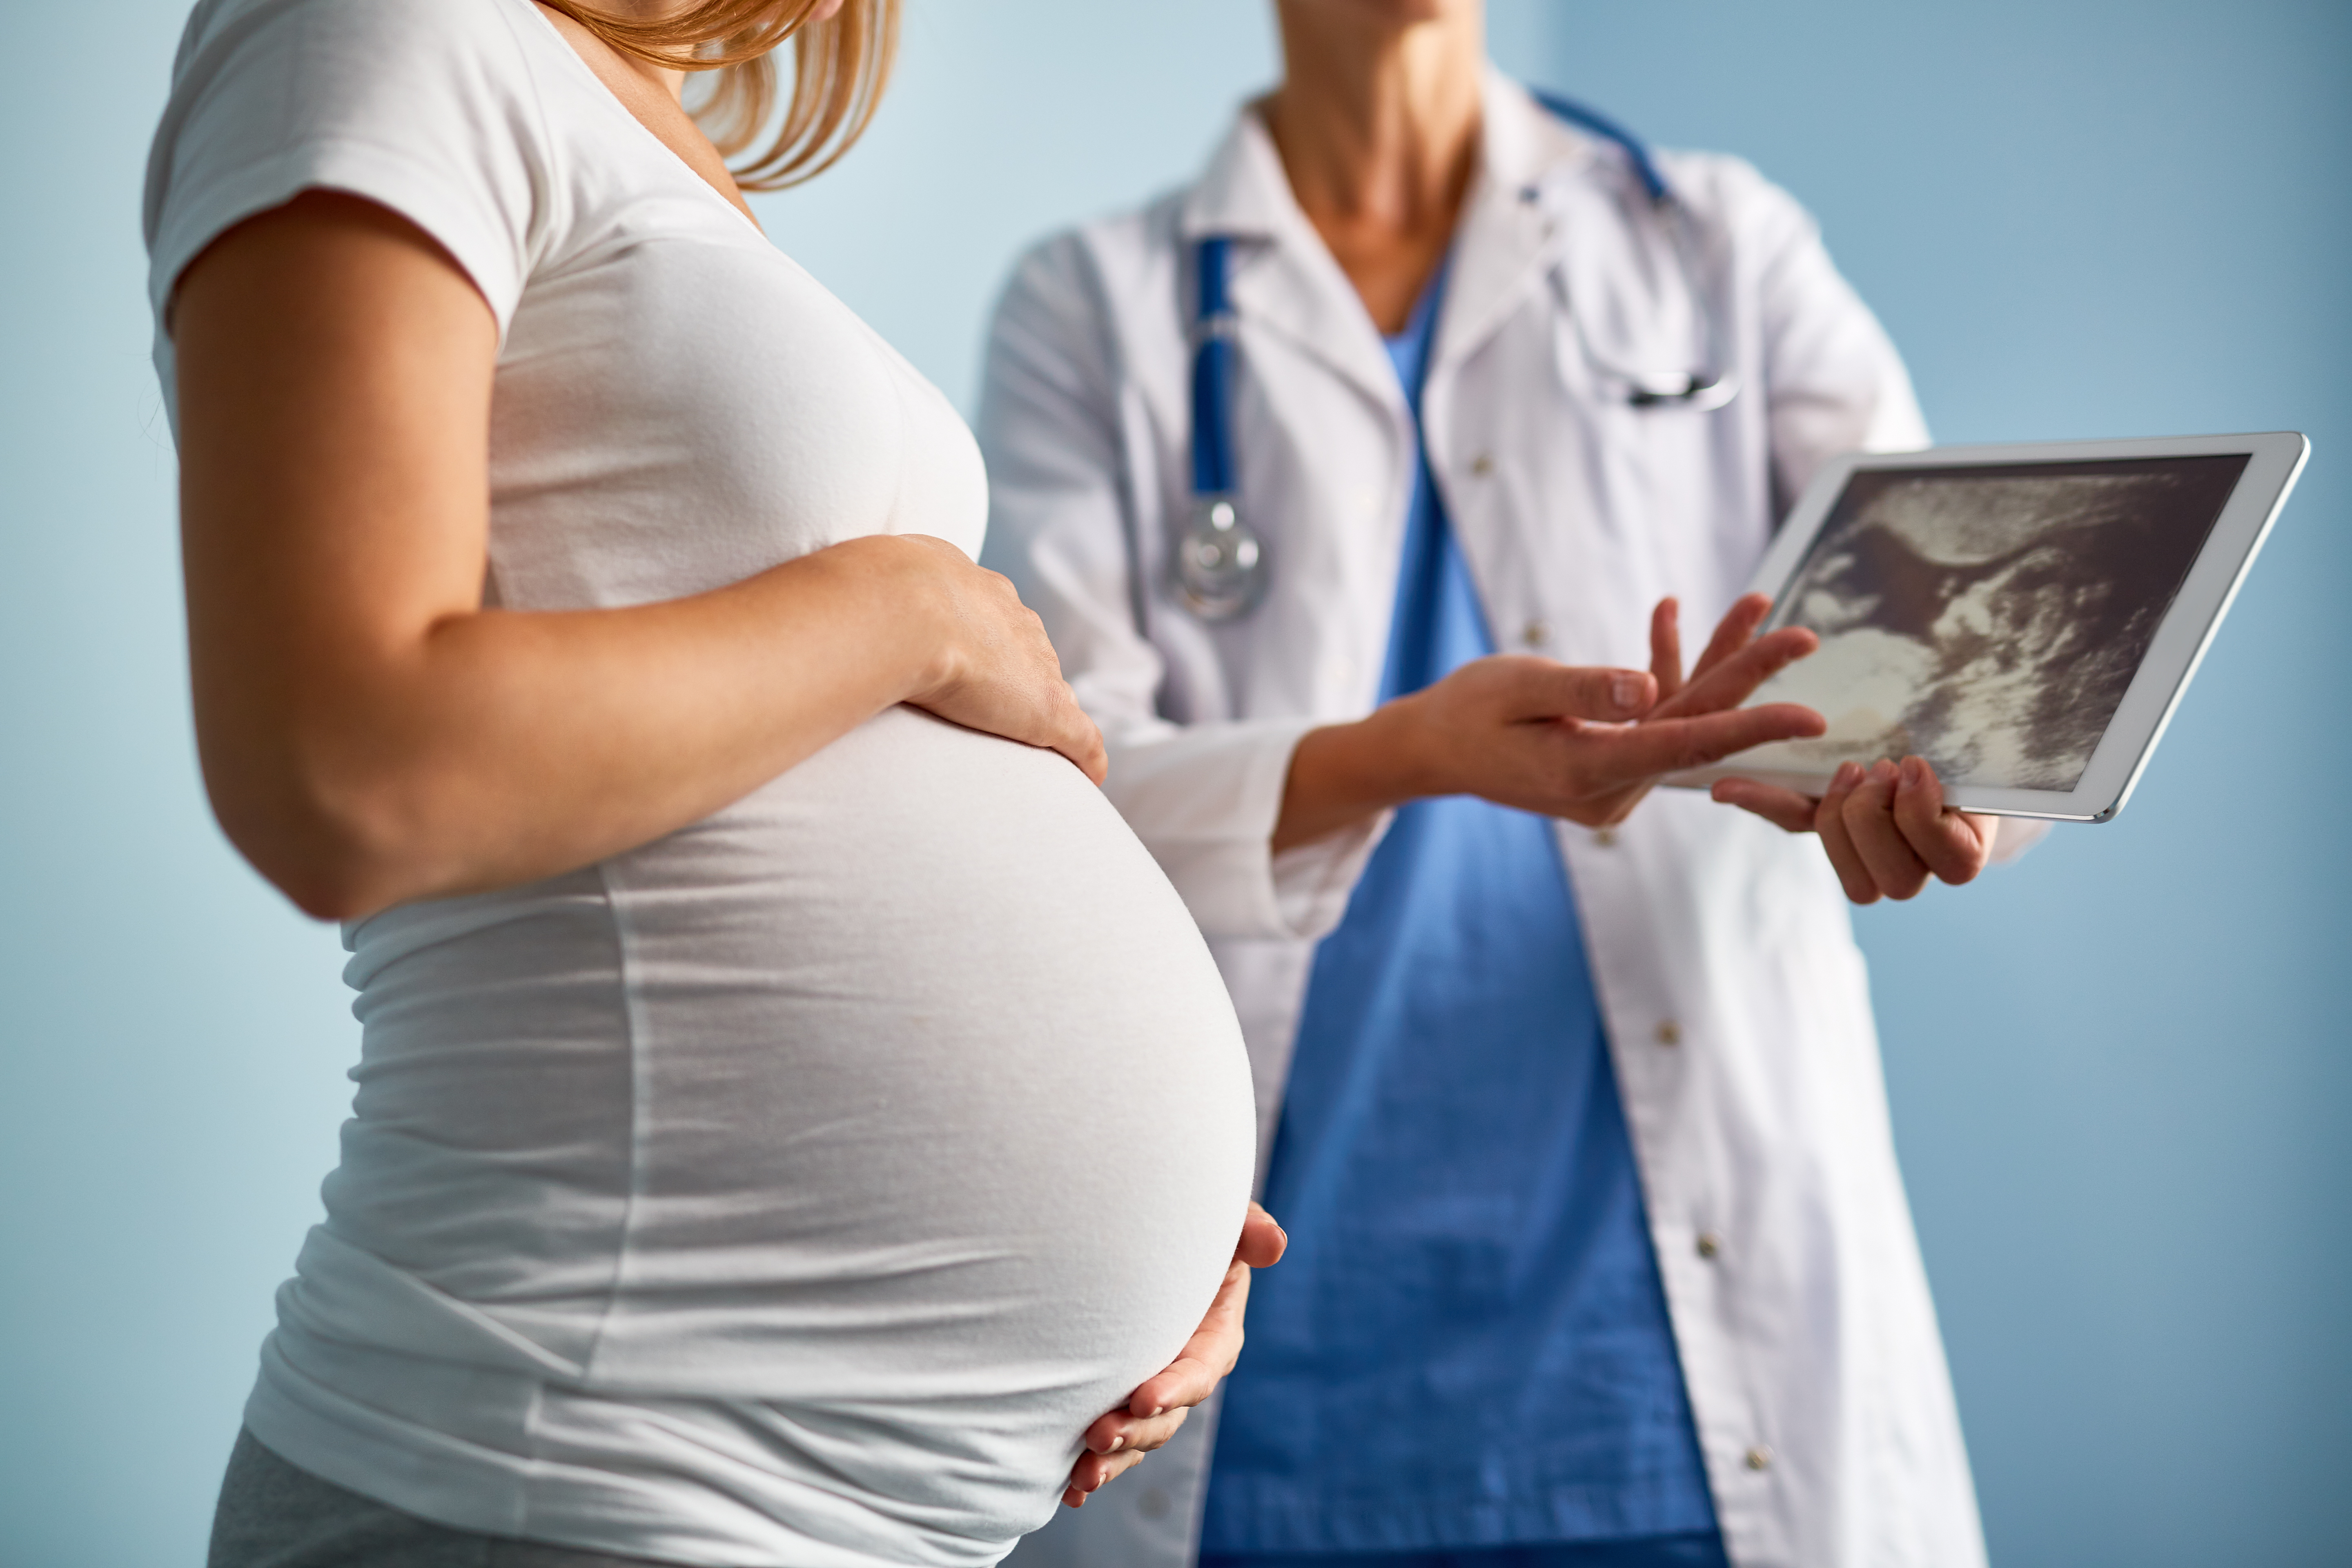 Un risque accru d'hypertension (HTA) maternelle pendant la grossesse, ou de prééclampsie a déjà été suggéré en cas de grossesse issue d’un transfert d'embryon congelé (TEC) (Visuel Adobe Stock 138952685)